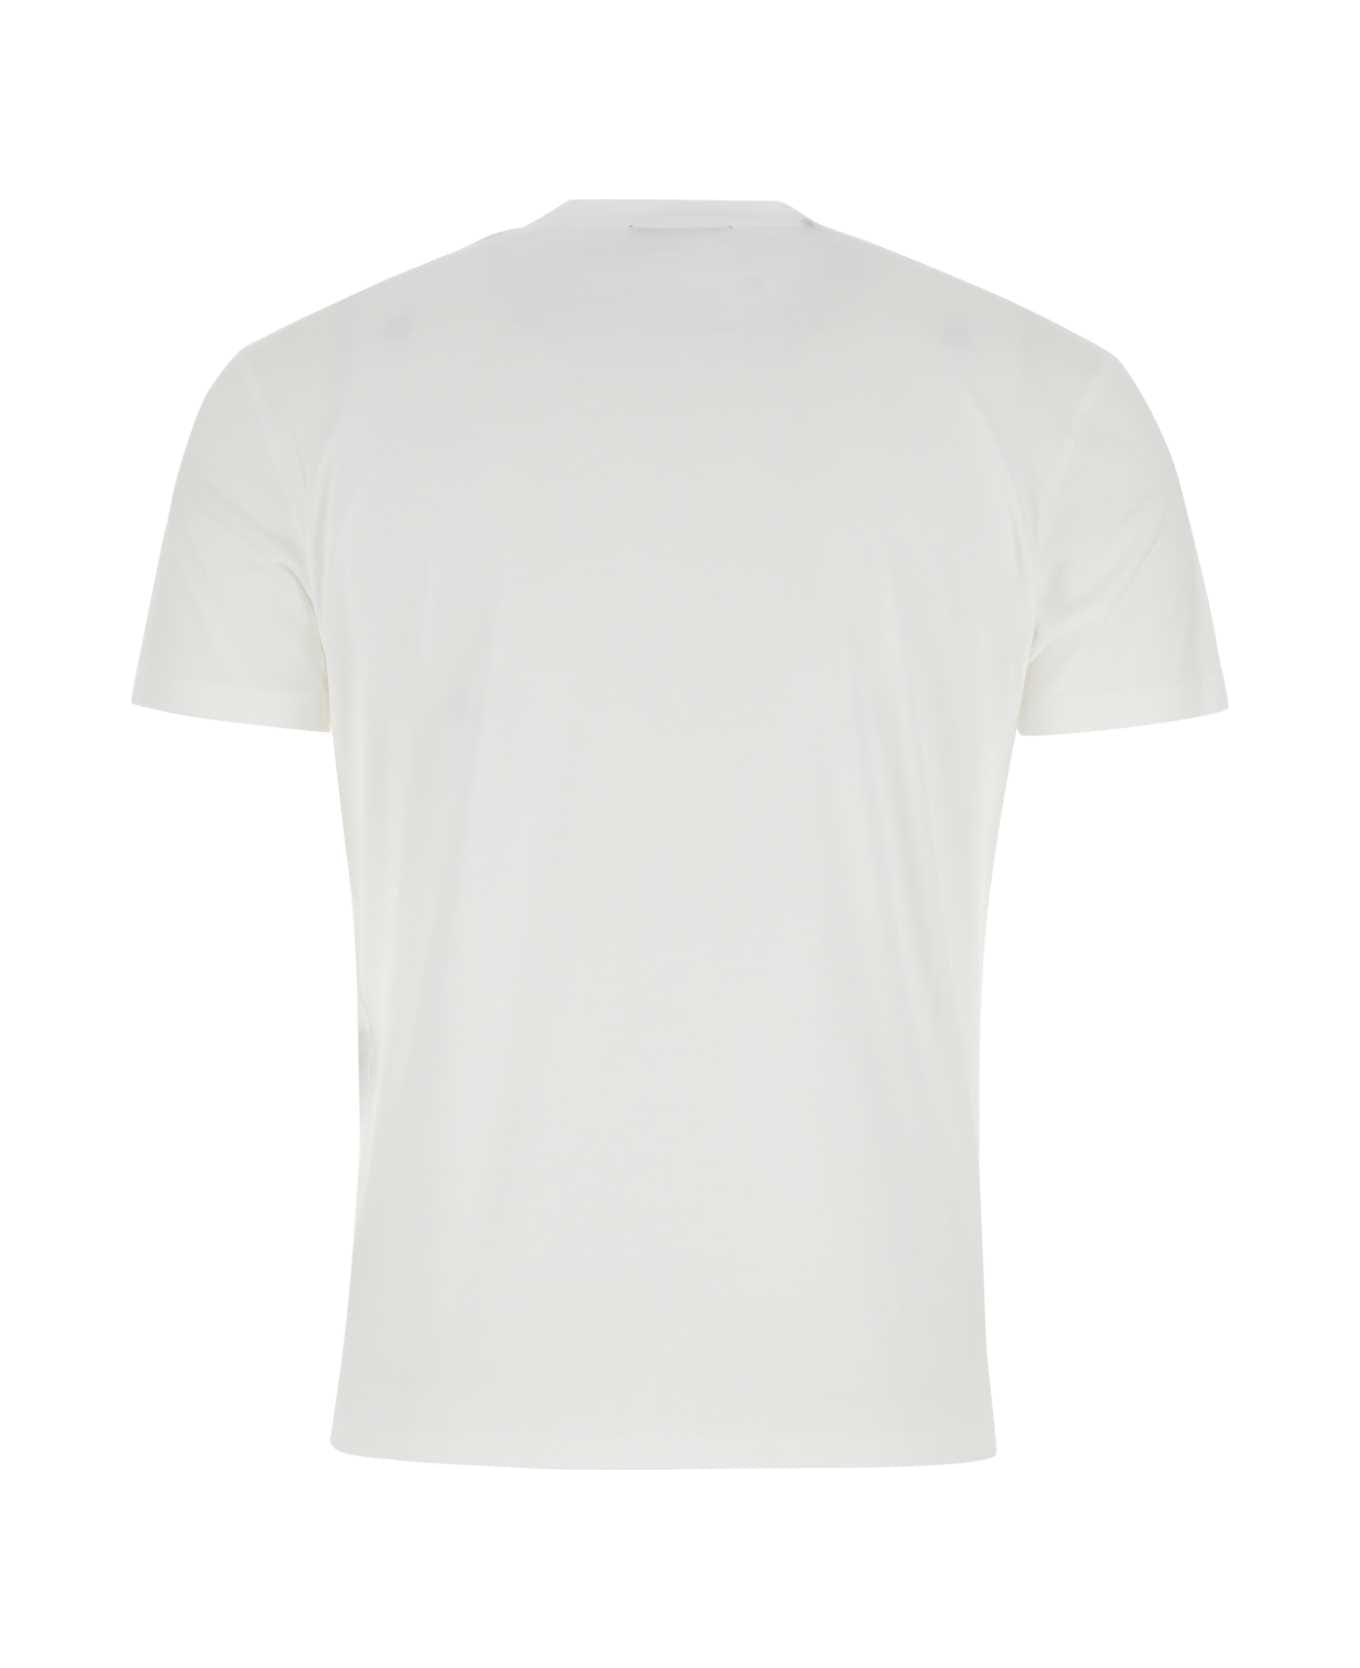 Tom Ford White Lyocell Blend T-shirt - AW002